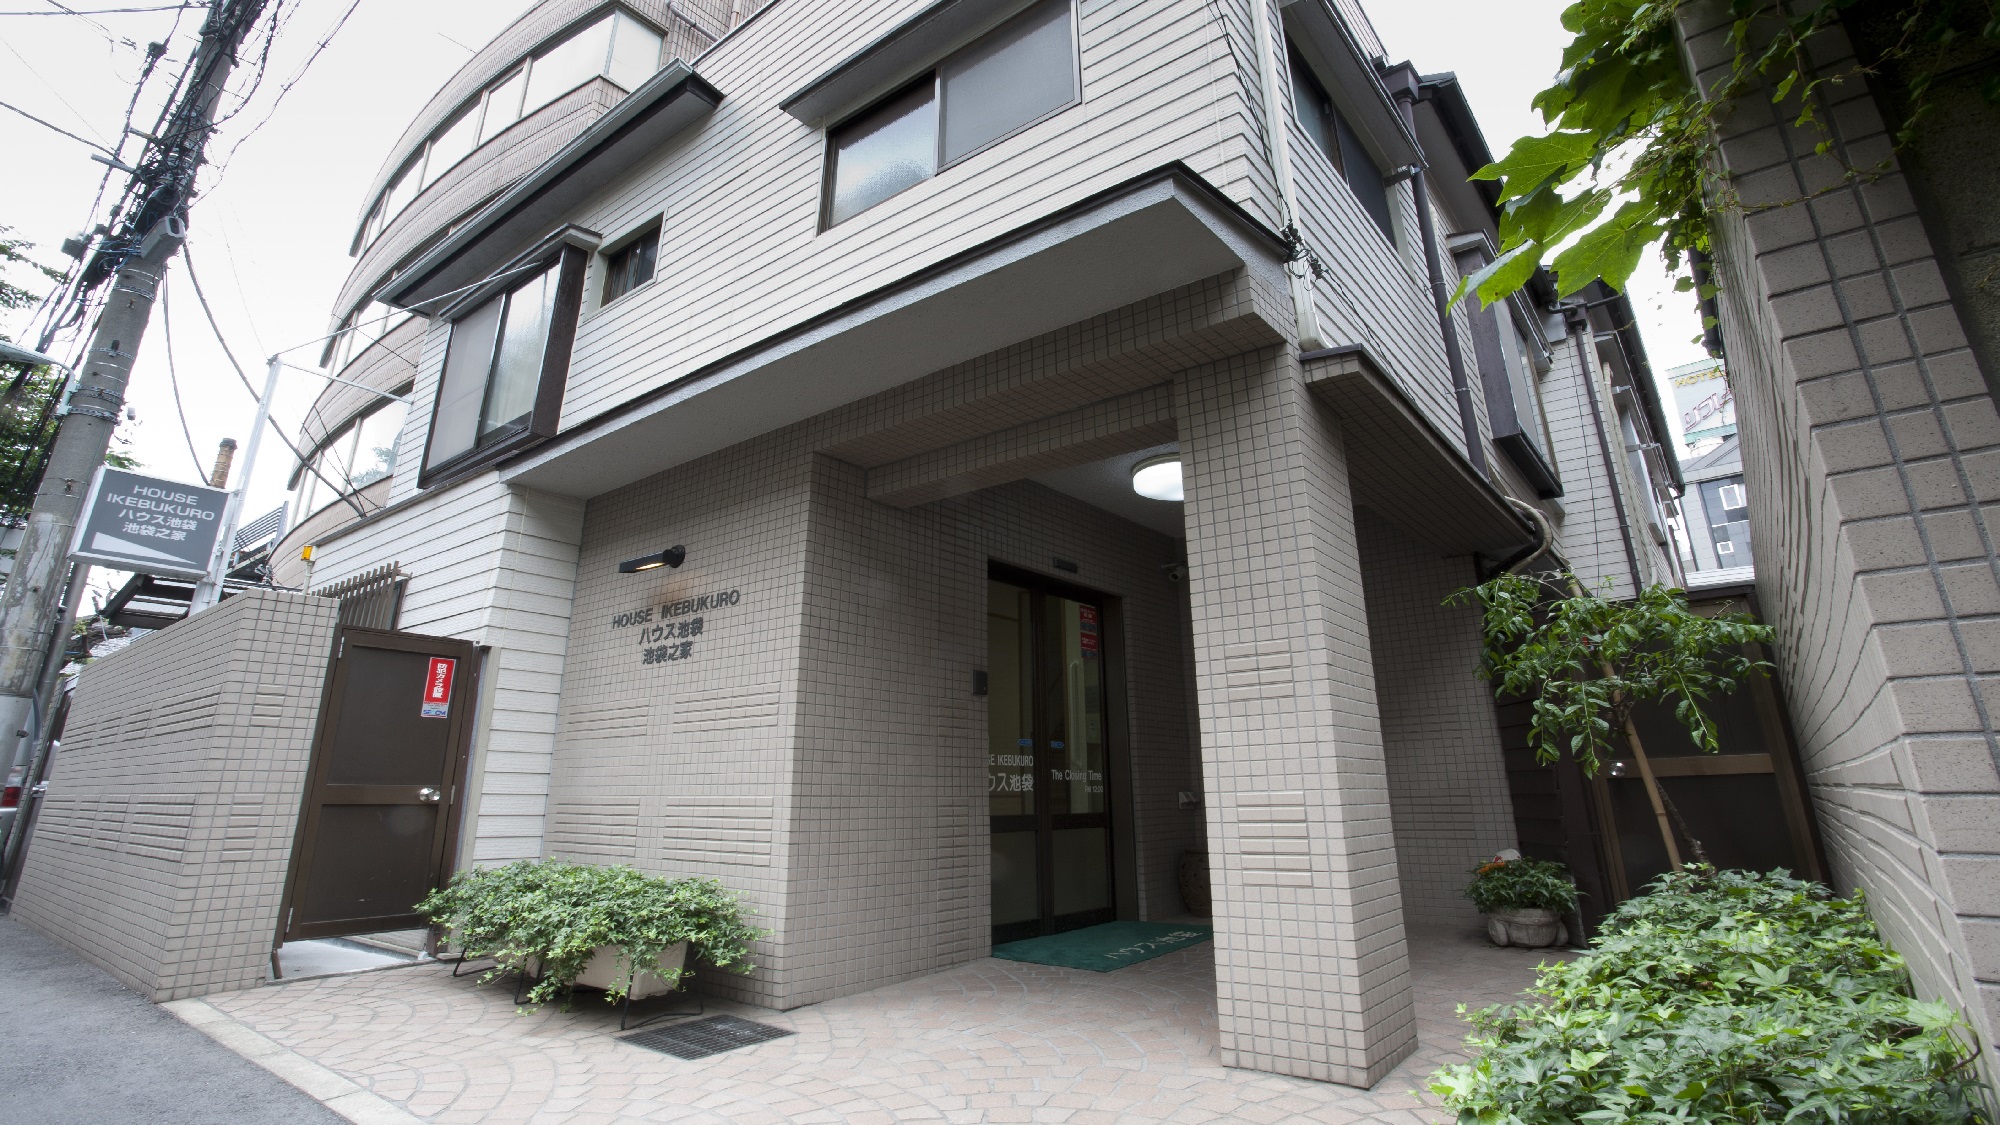 House Ikebukuro